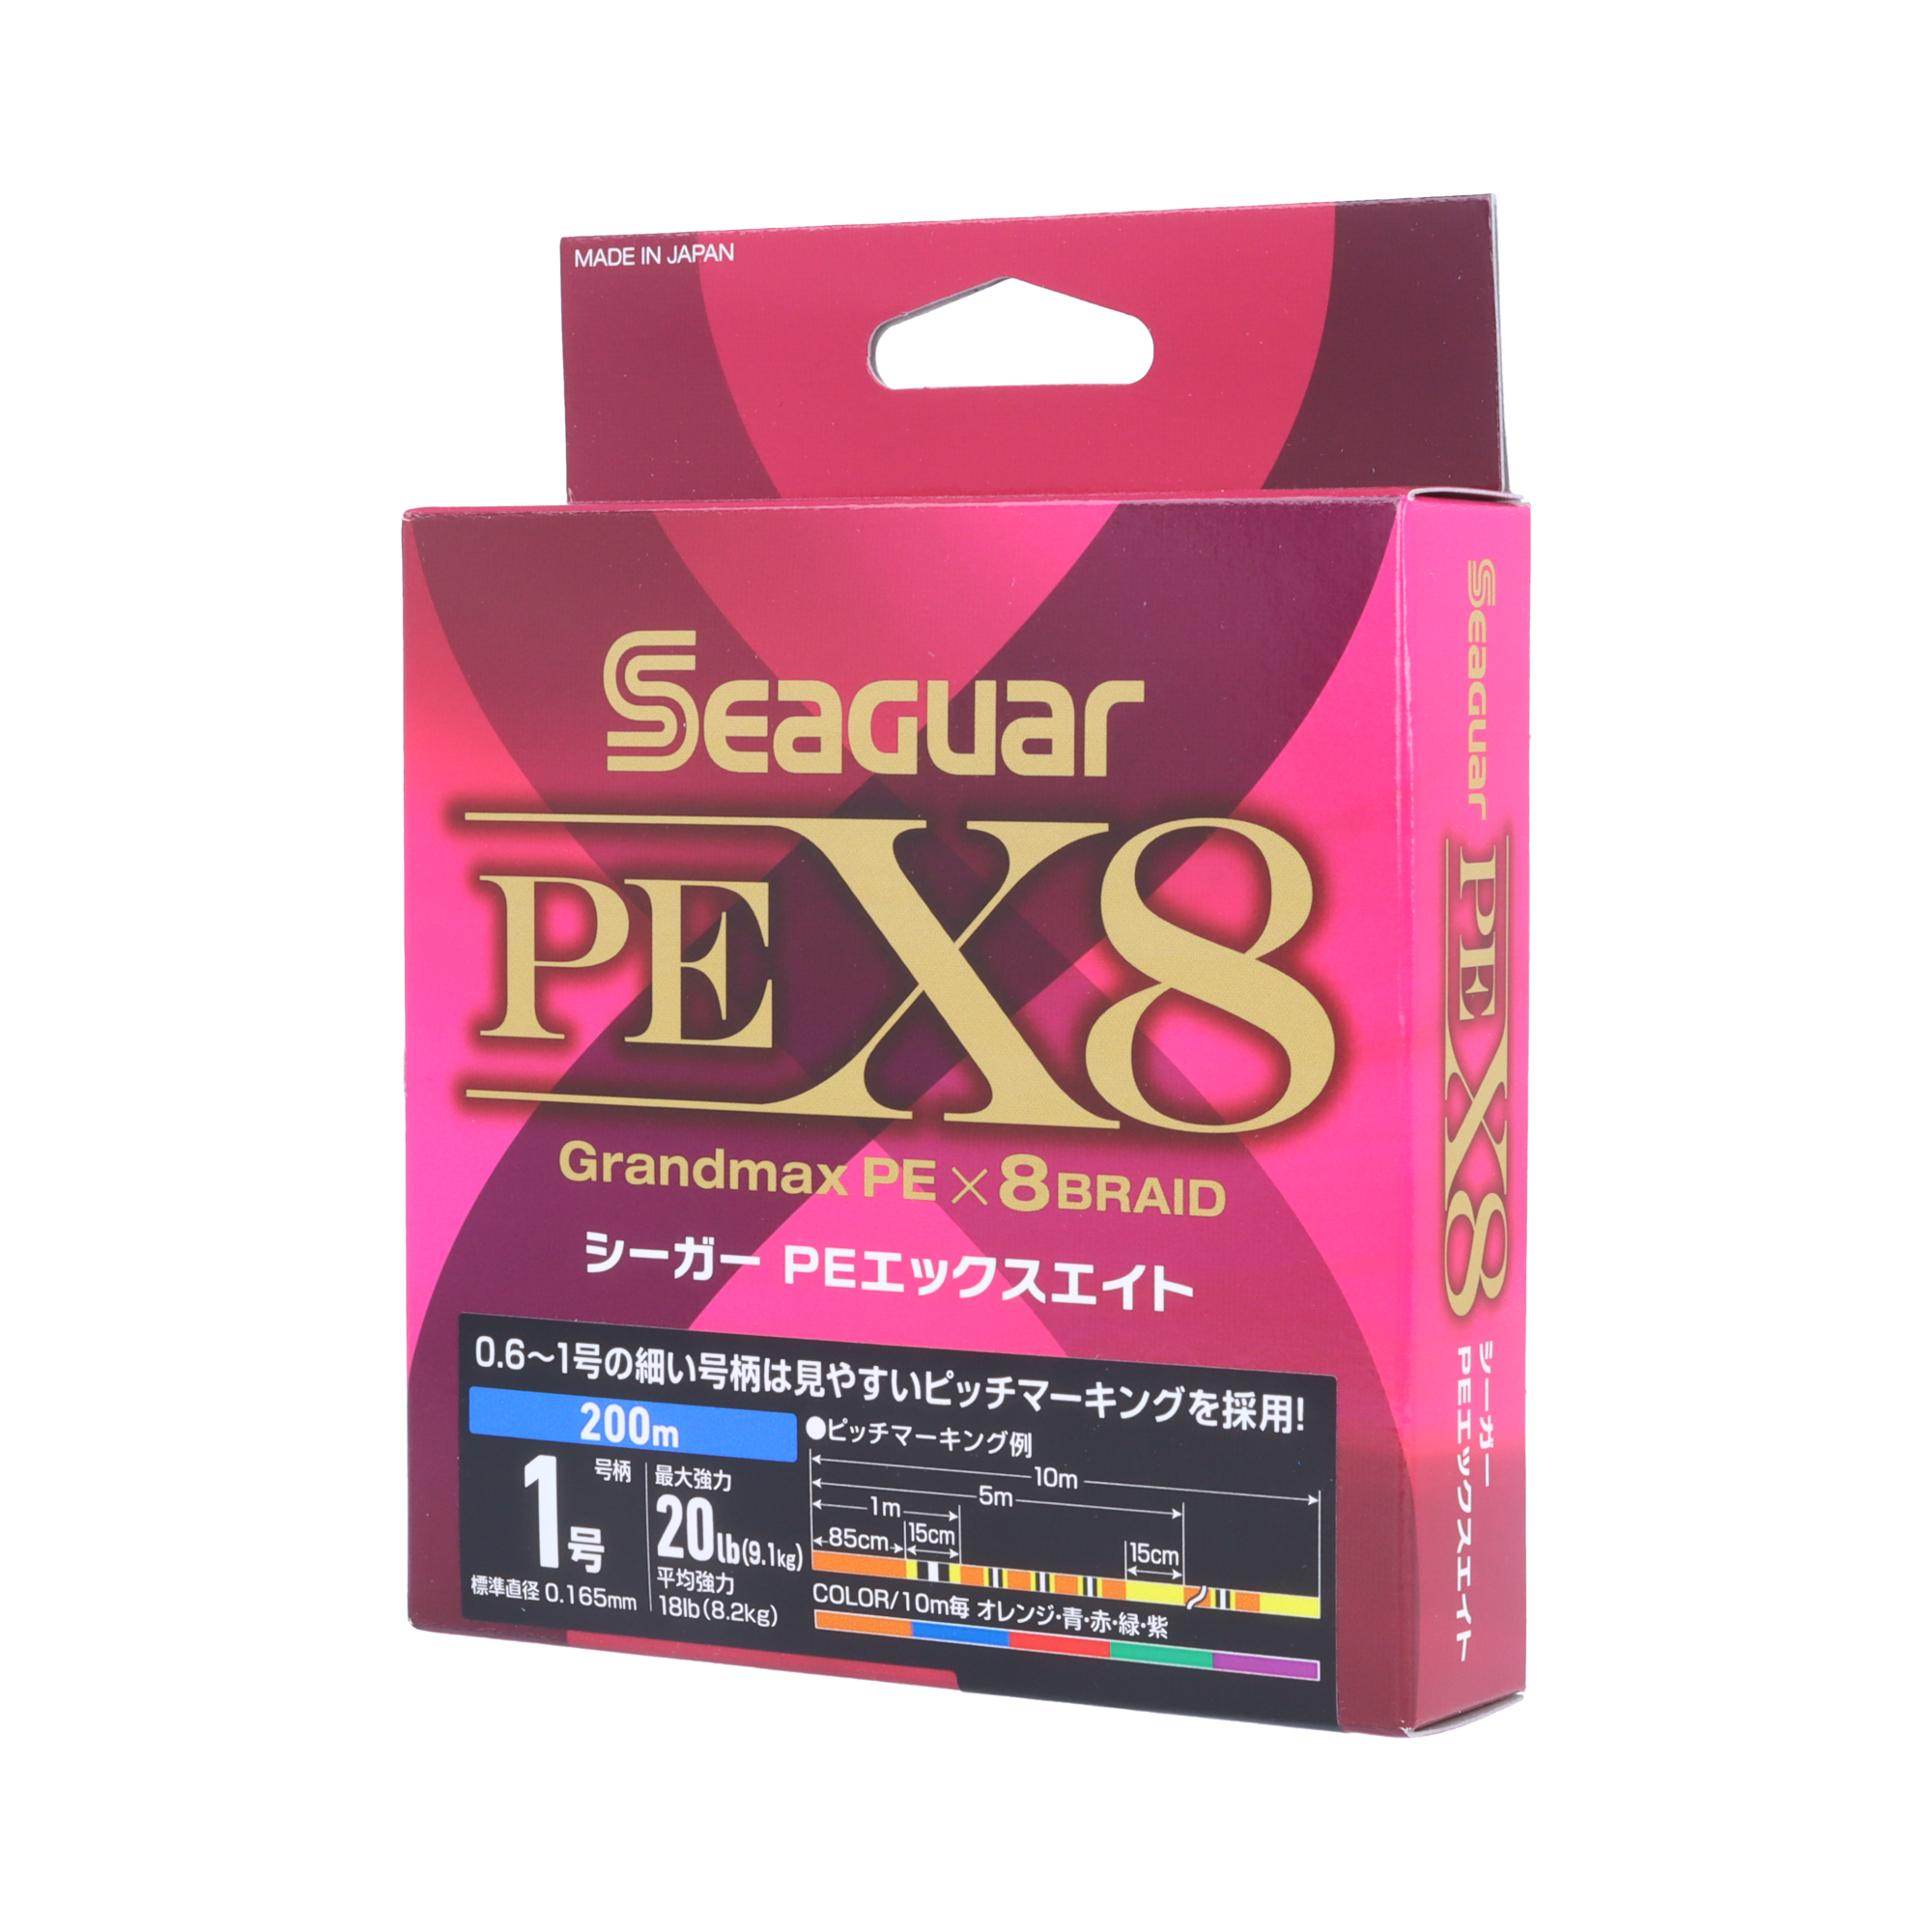 Seaguar シーガー PE X8 5.0号/74.0lb/5色/200m